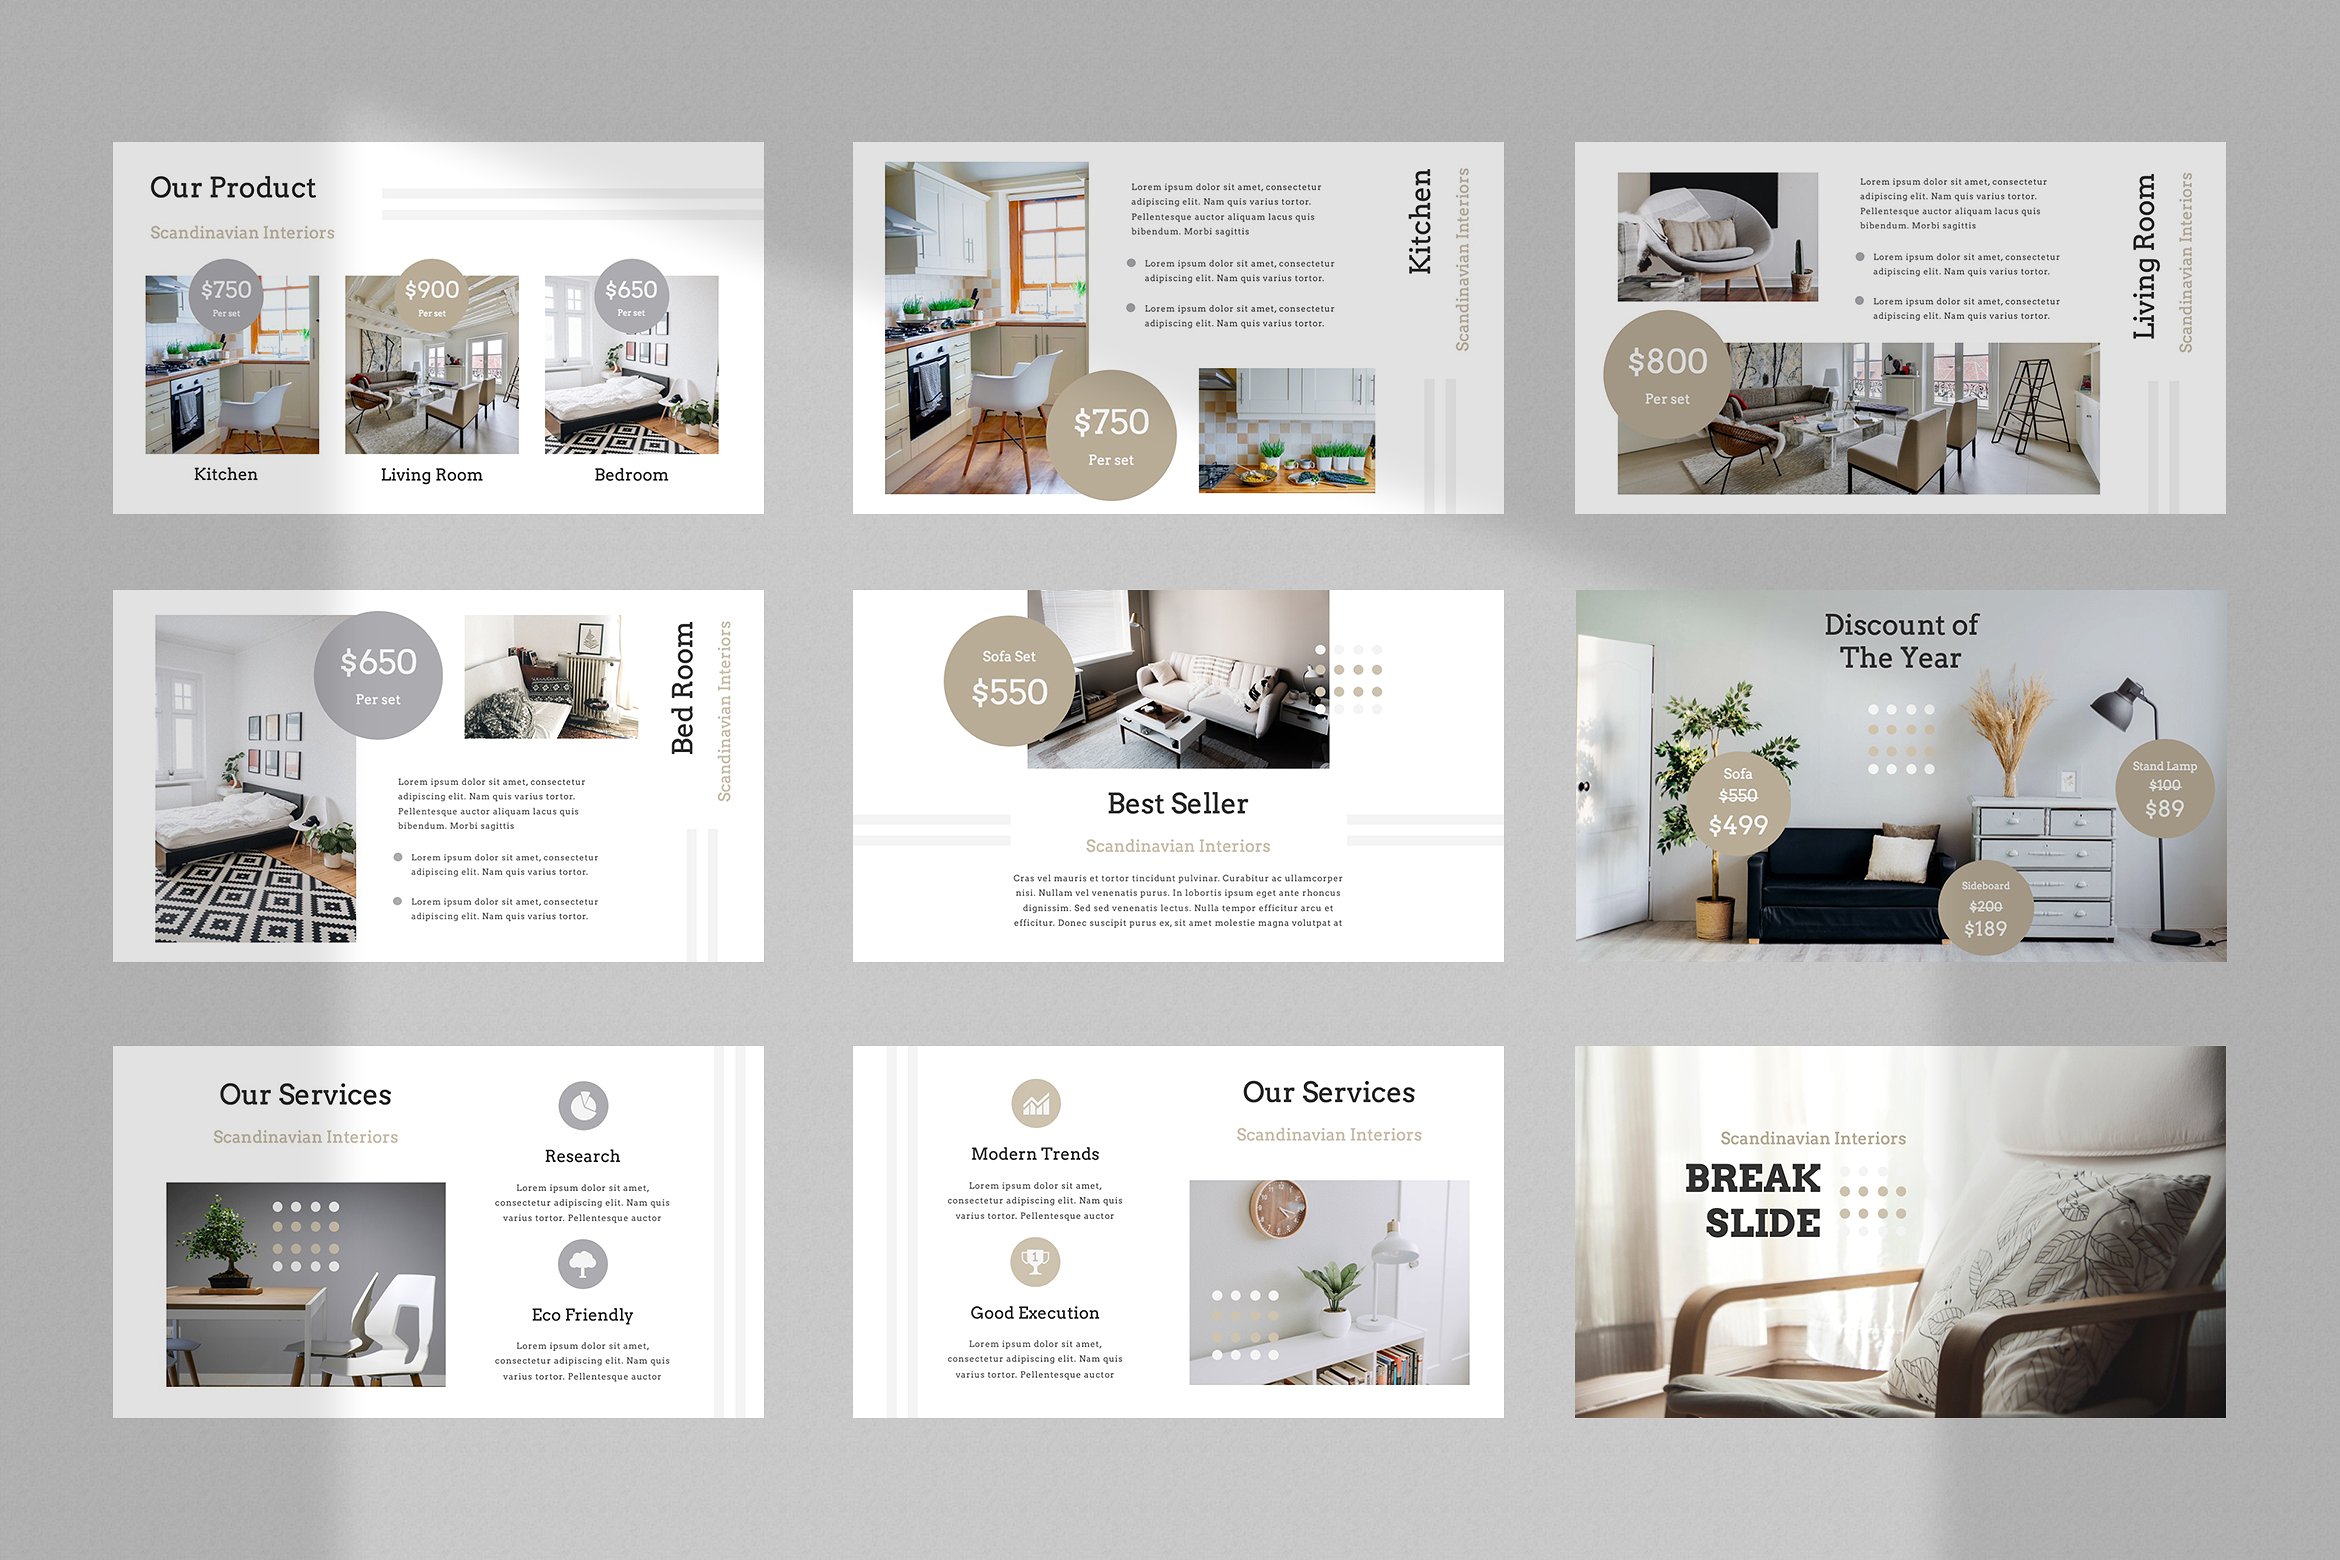 现代简约室内家居设计作品演示幻灯片模板  Modern Minimalist Interior Home Design Work Presentation Slide Template插图3